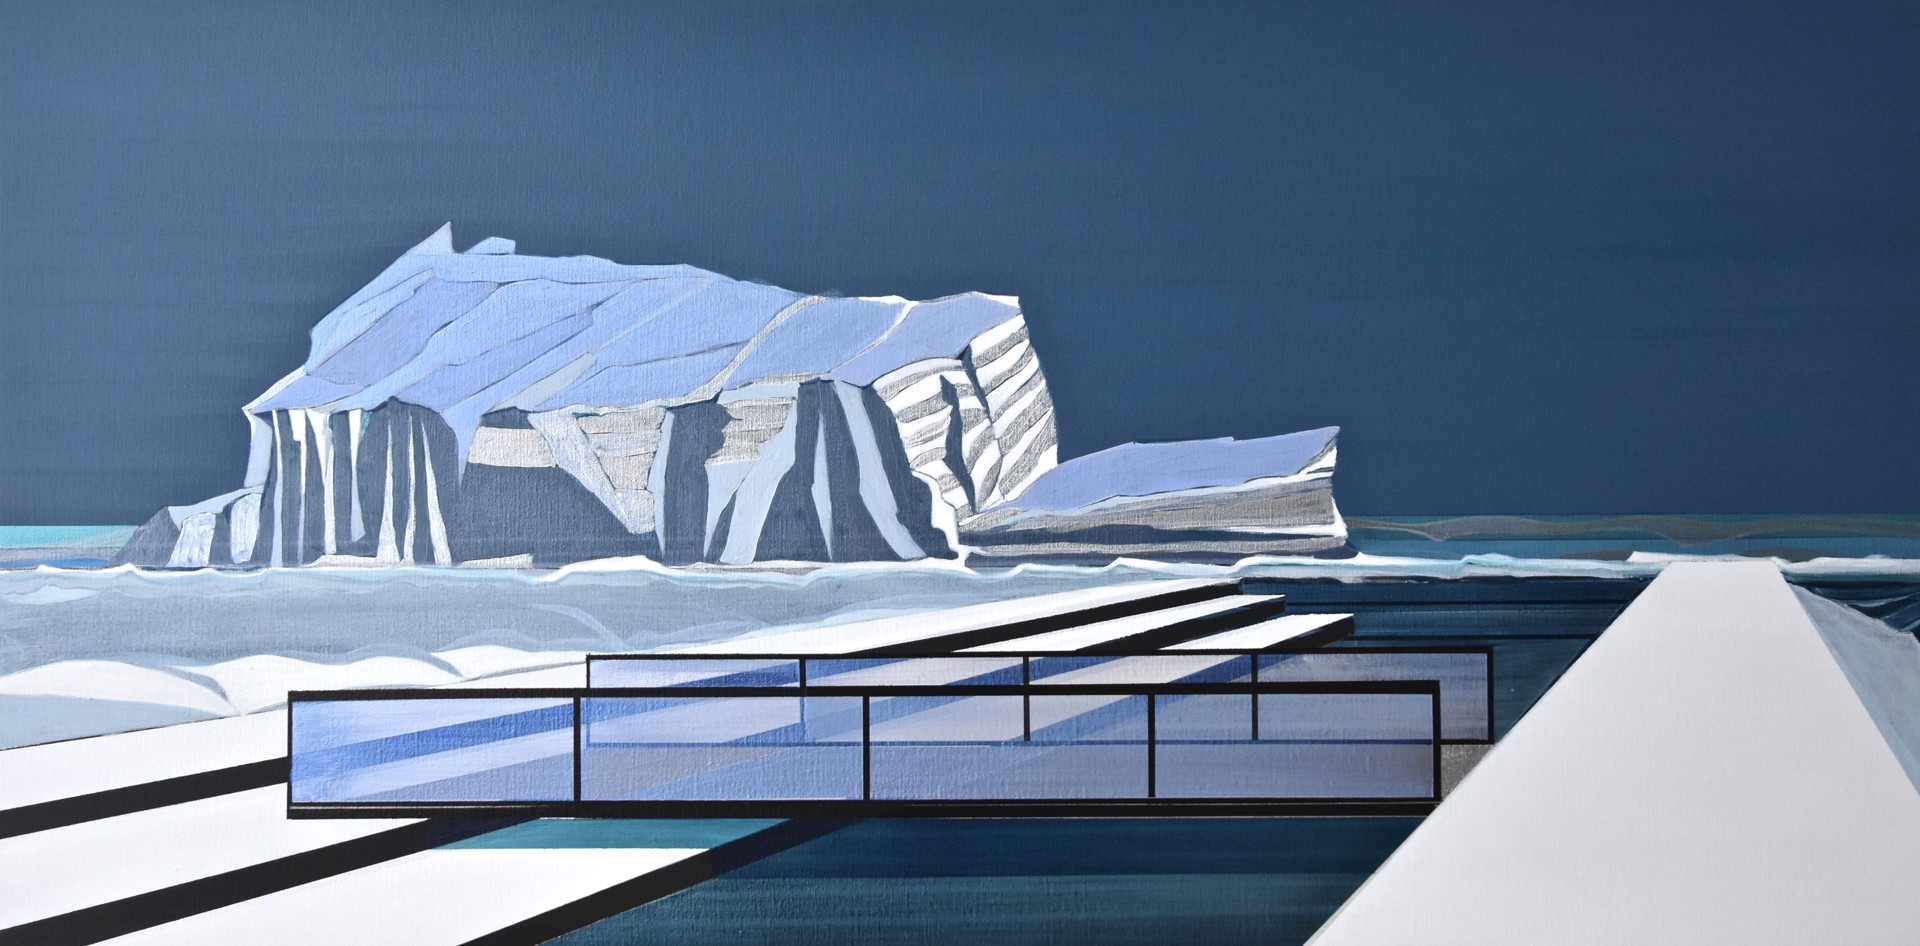 Glacier Bay Basin by Cecile van Hanja